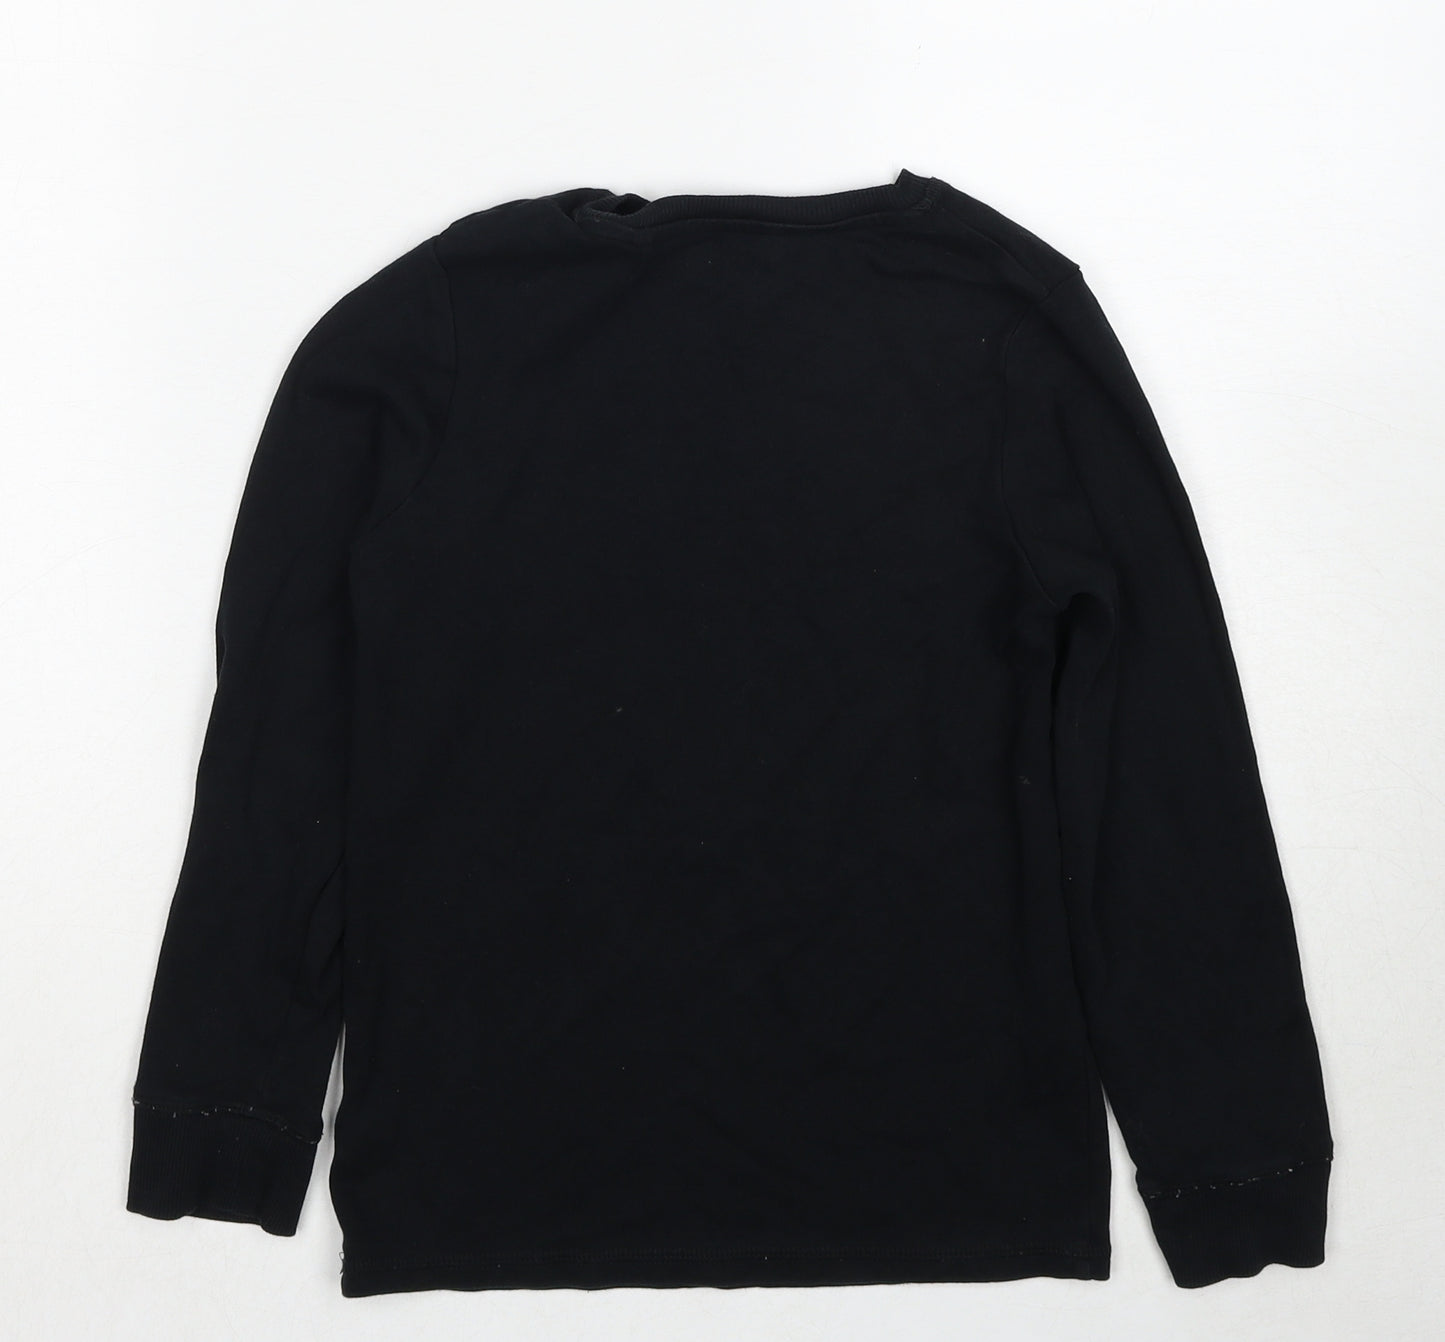 NEXT Girls Black Cotton Pullover Sweatshirt Size 9 Years Pullover - Slogan